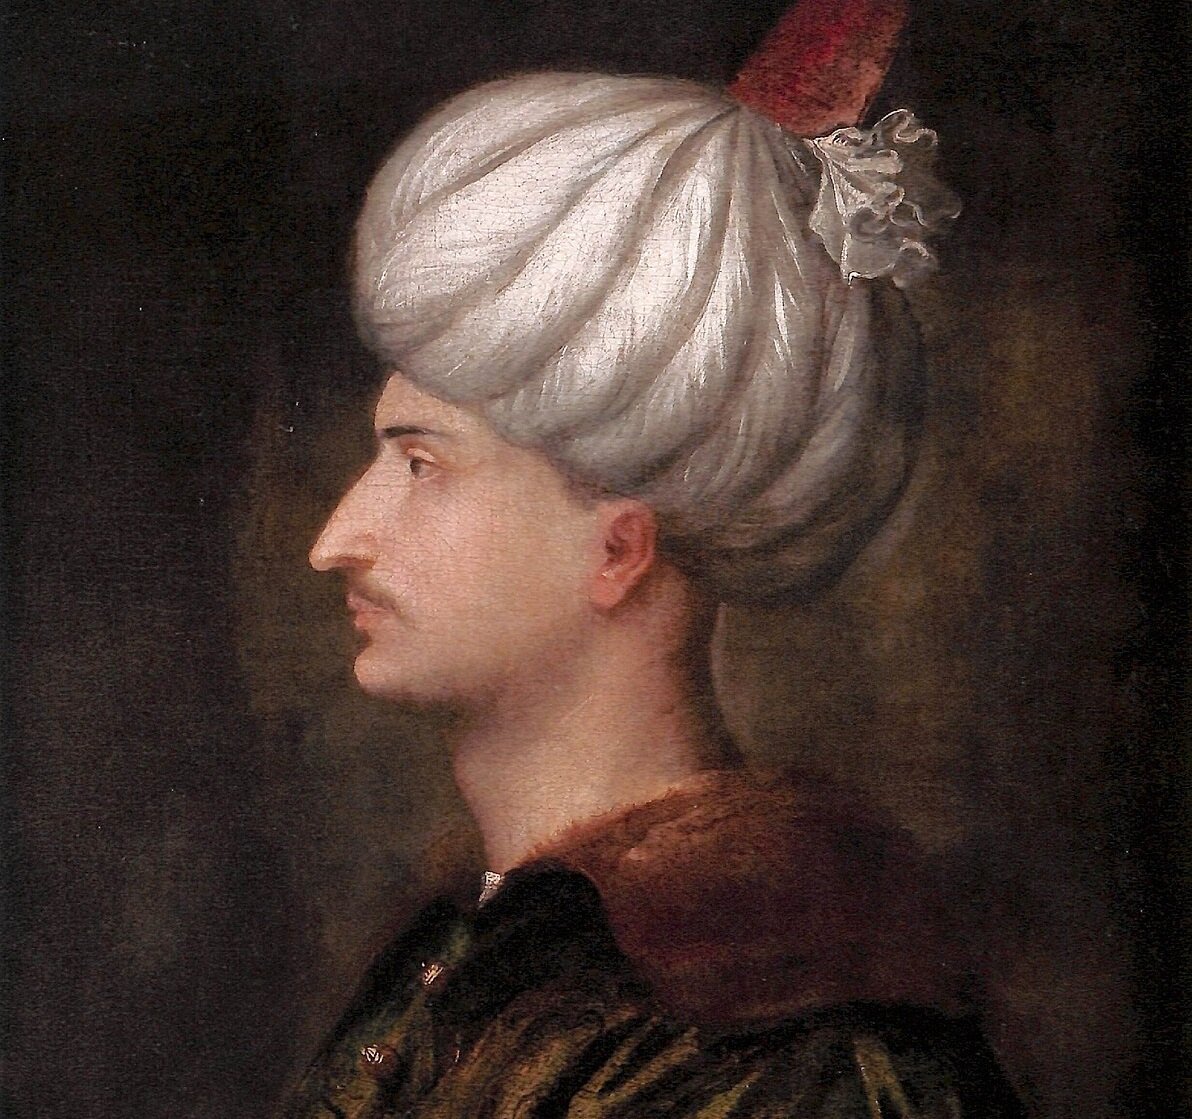 Сулейман i великолепный (1520 – 1566)